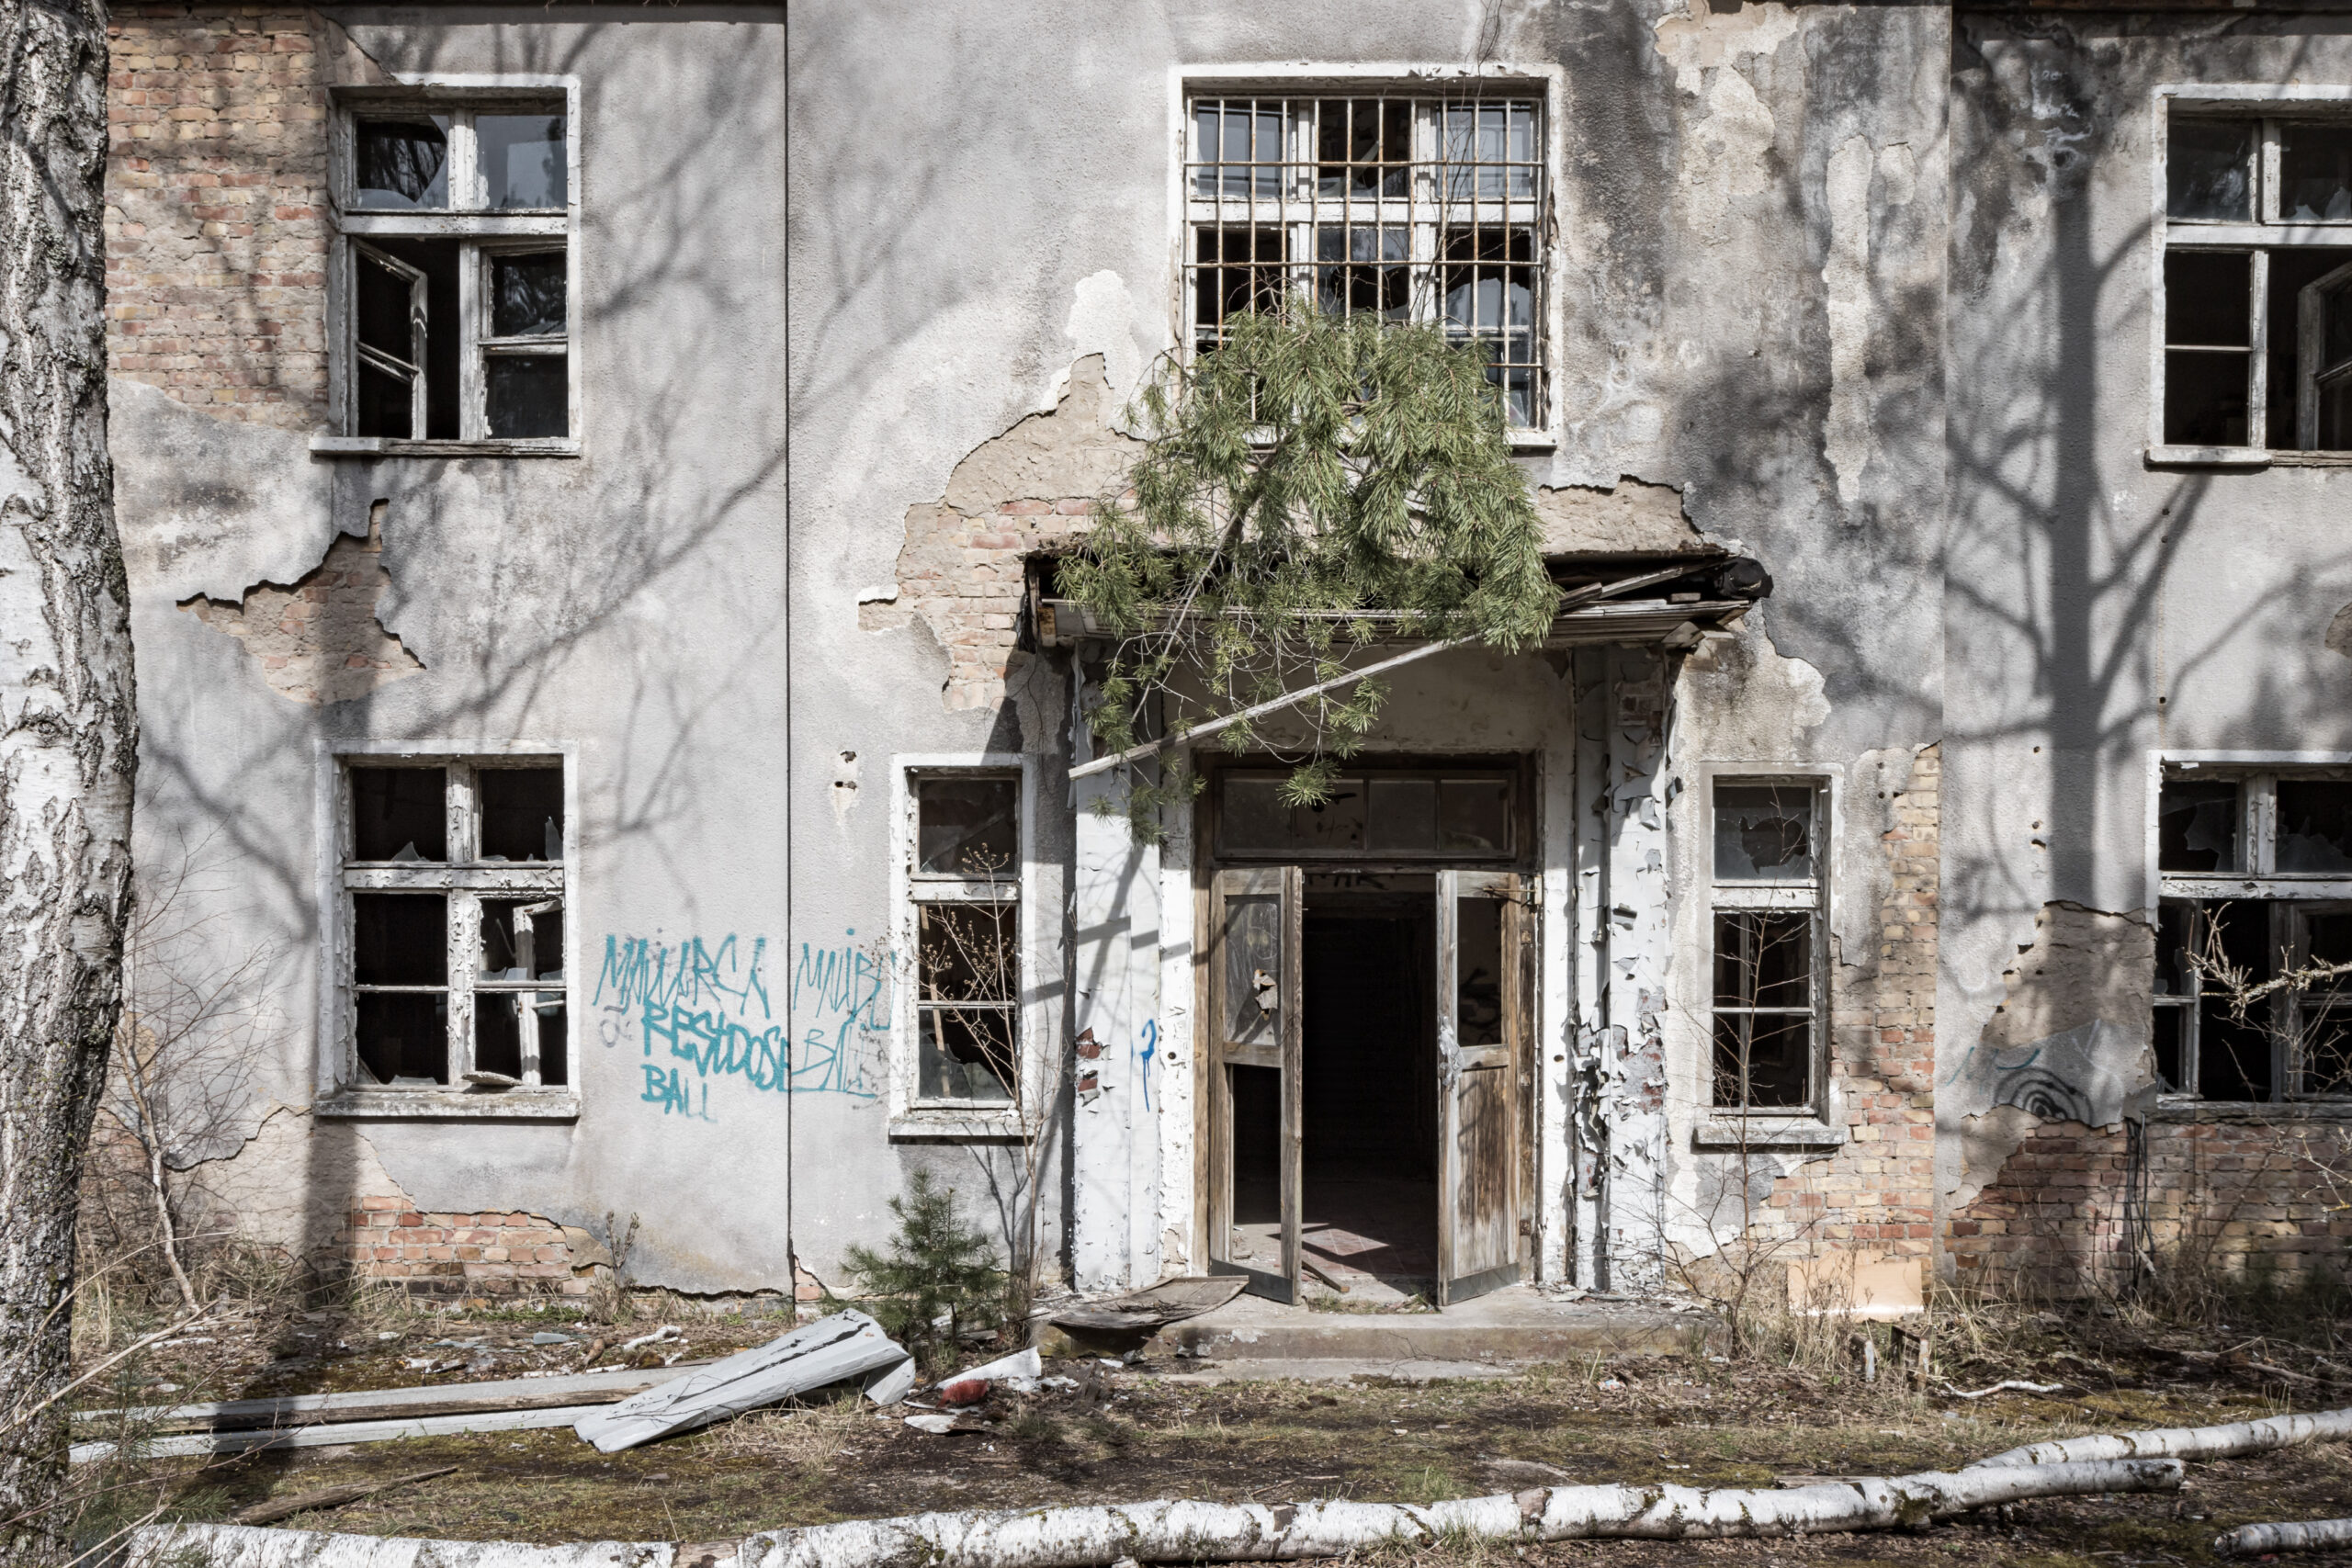 STADT IM WALD Ehemalige Russische Kaserne im Norden Berlins, auch als "Stadt im Wald" bekannt.